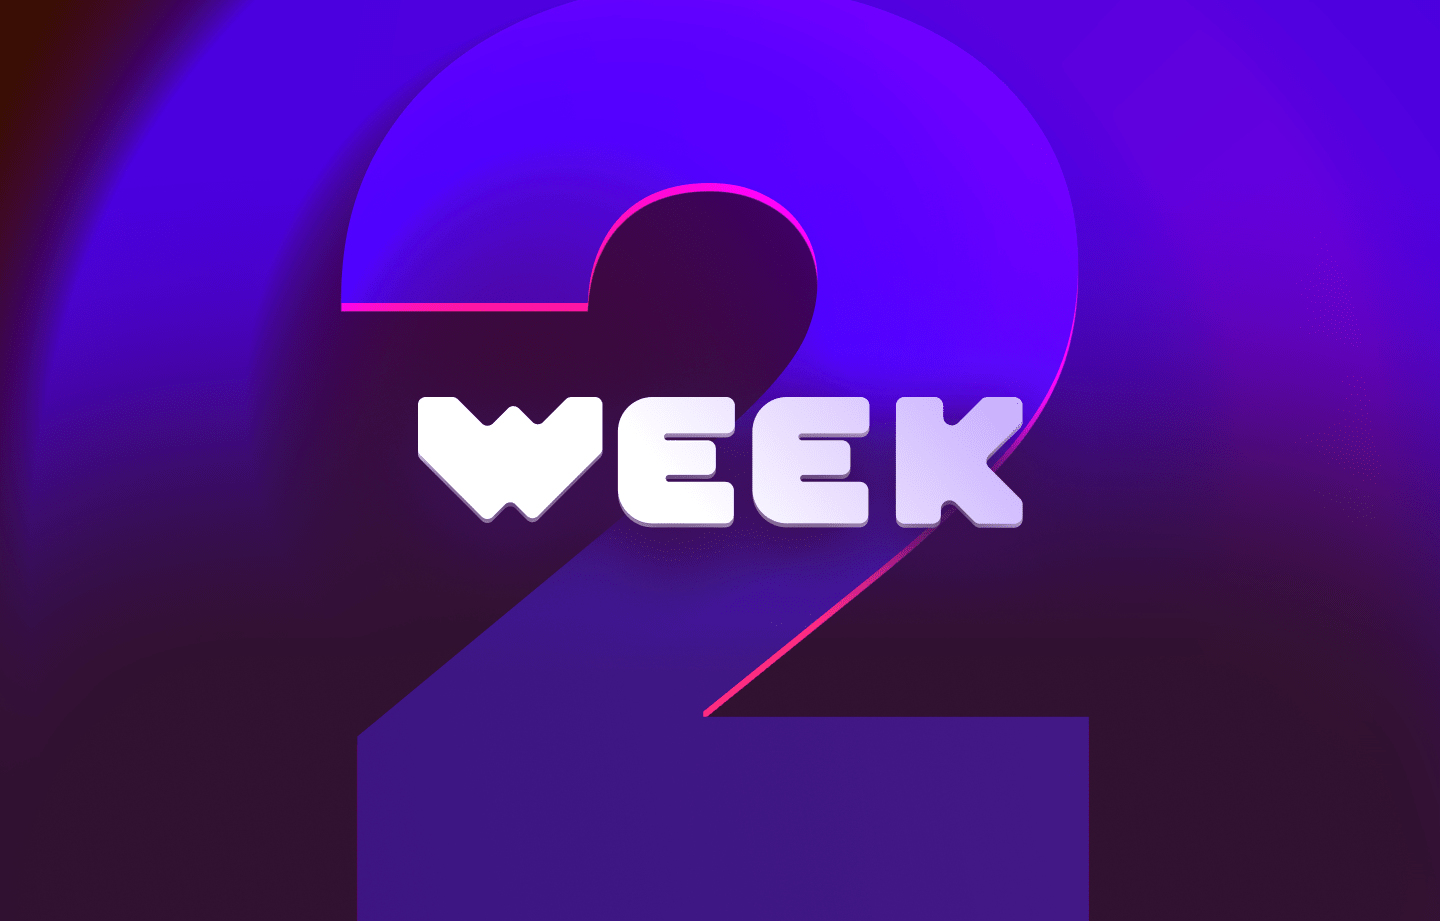 This week in web3 #2